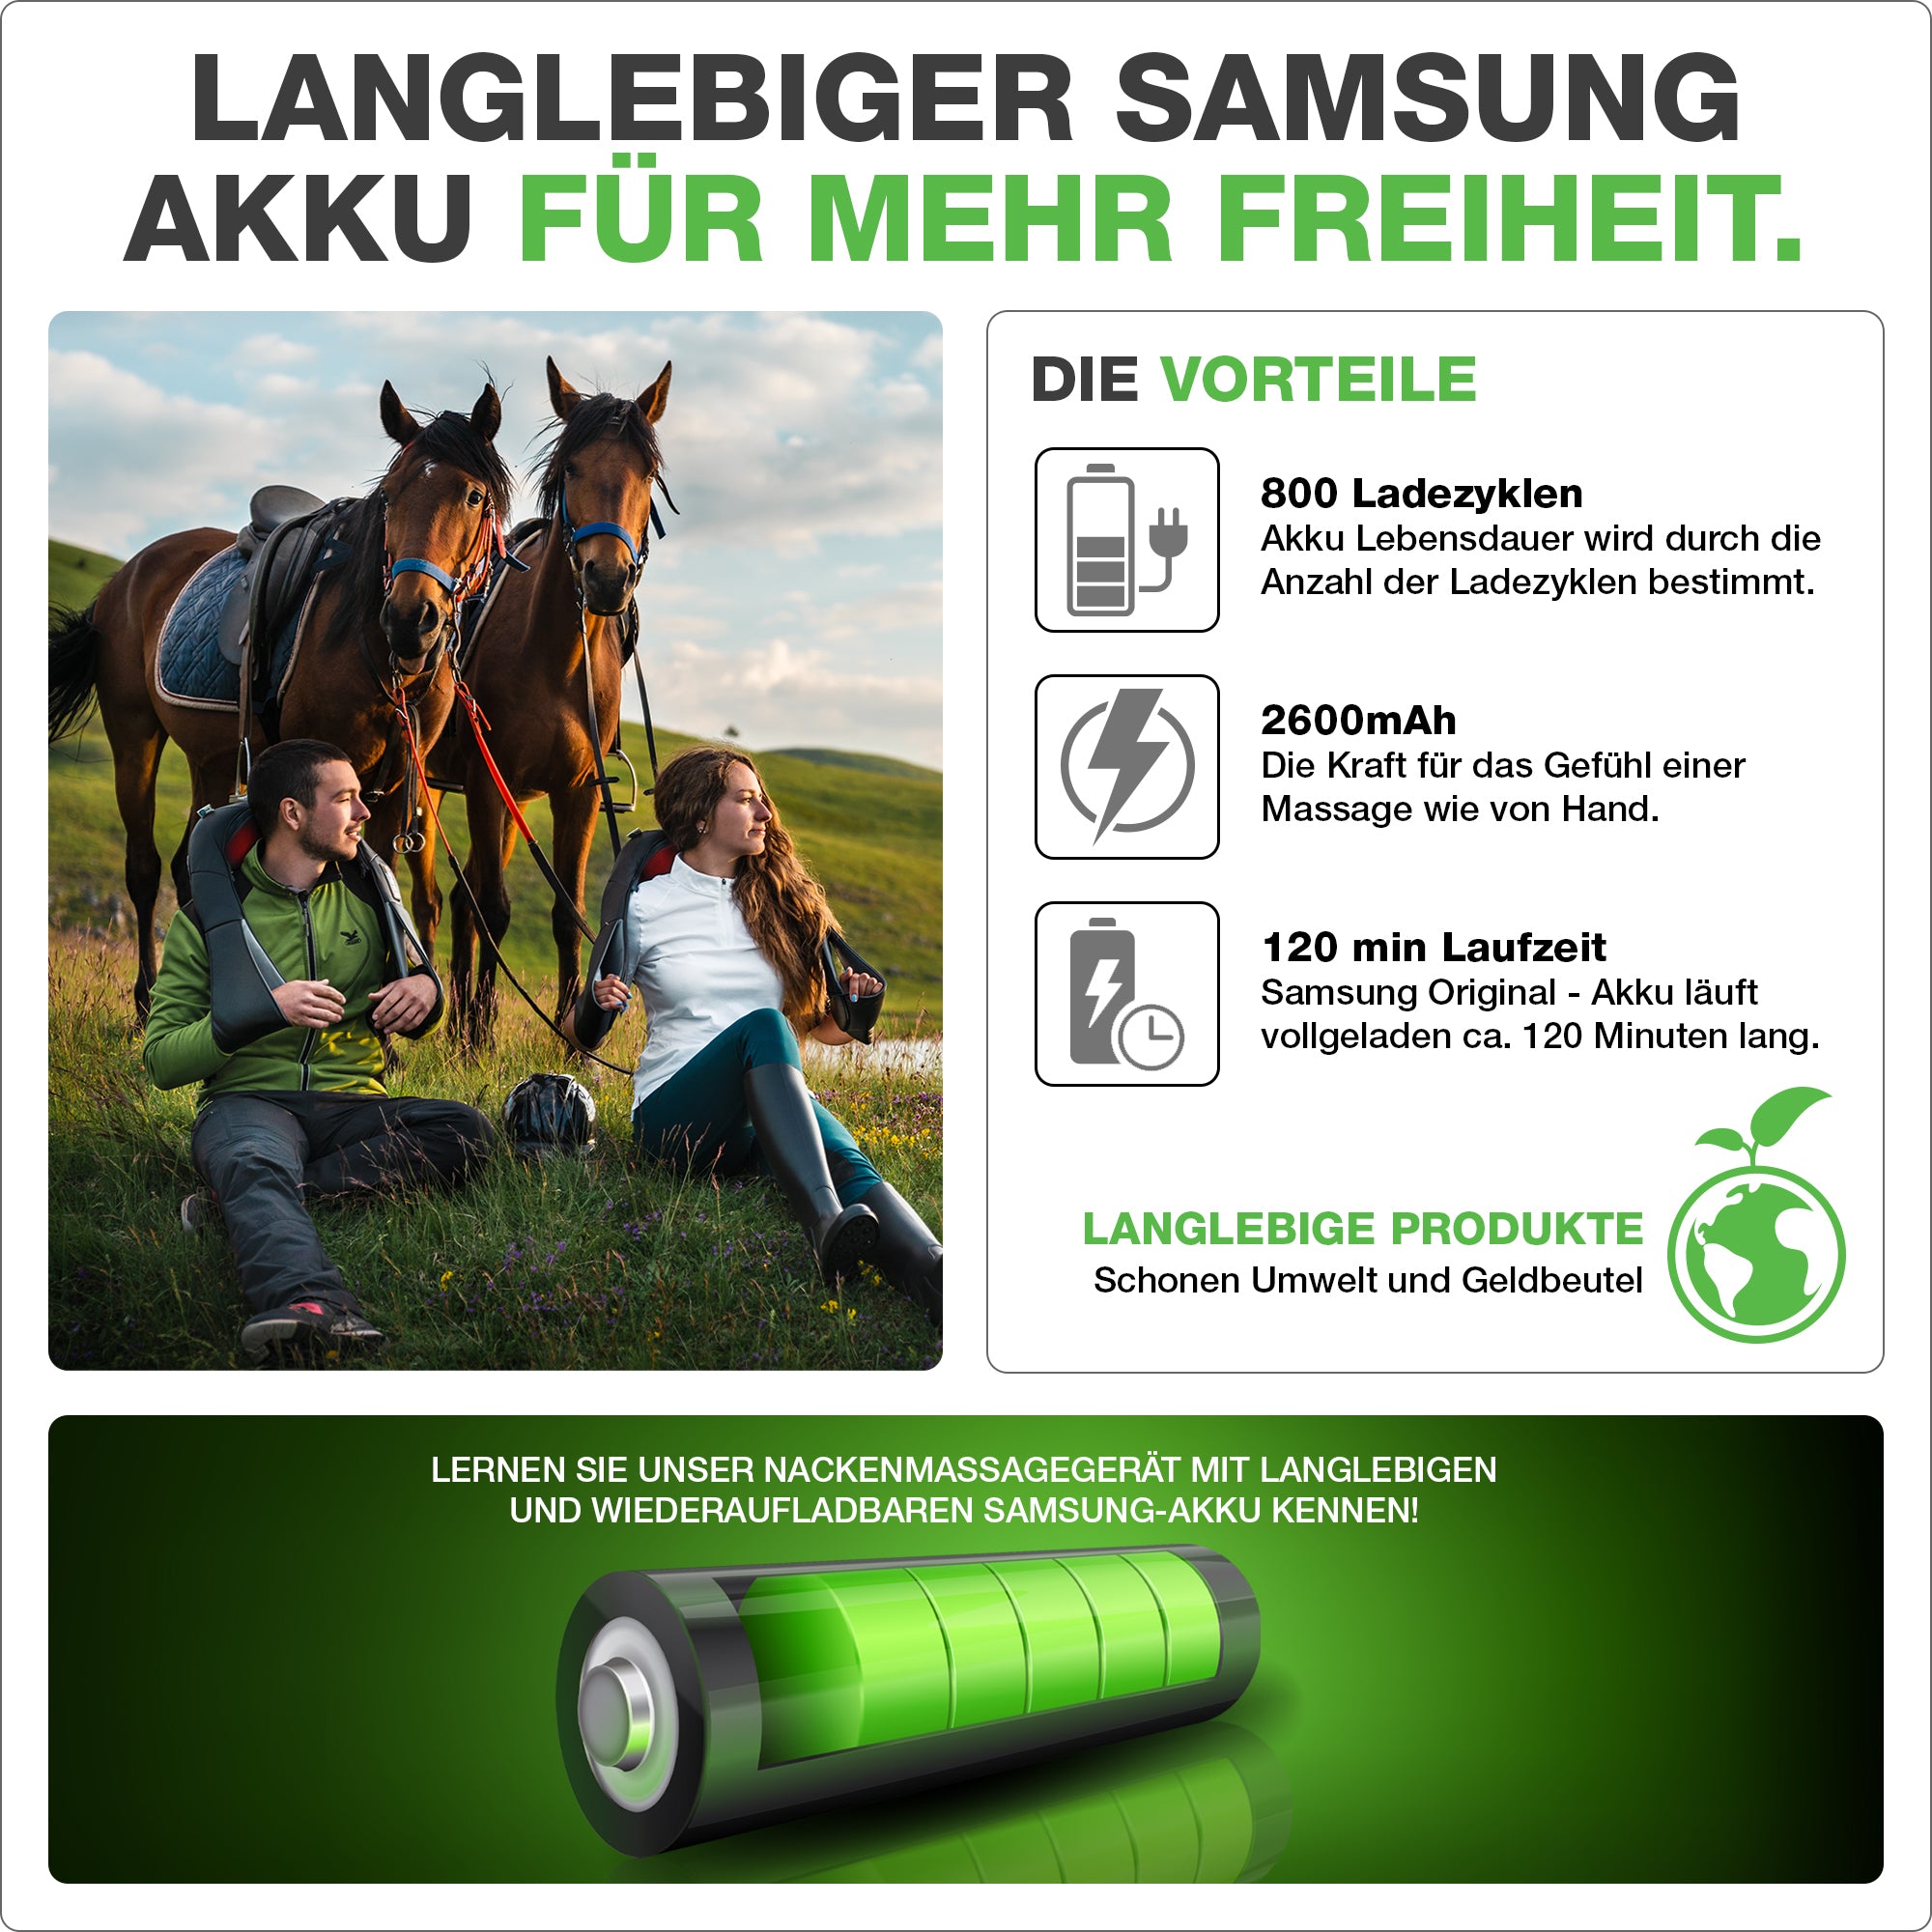 Batteria Samsung di lunga durata per una maggiore flessibilità